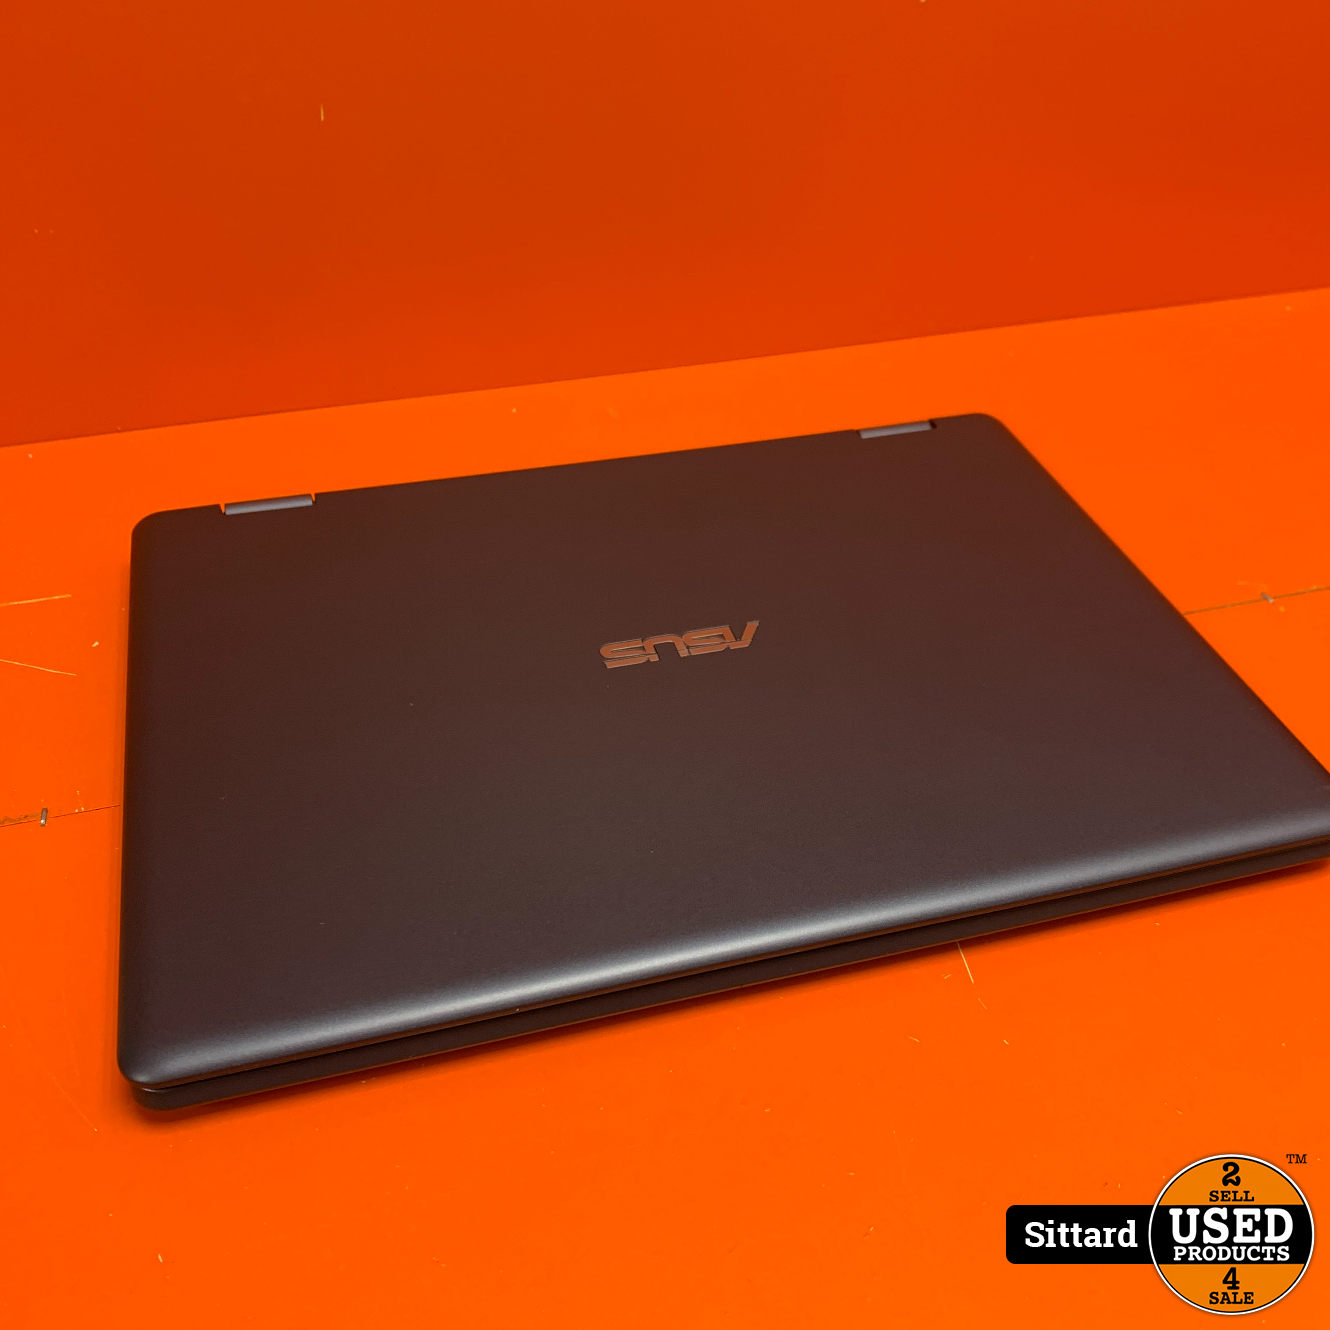 Geleidbaarheid Kreta schaduw Asus Vivobook Flip TP202N Laptop | Intel Celeron, 64GB SSD, 4GB Ram DDR3 -  Used Products Sittard